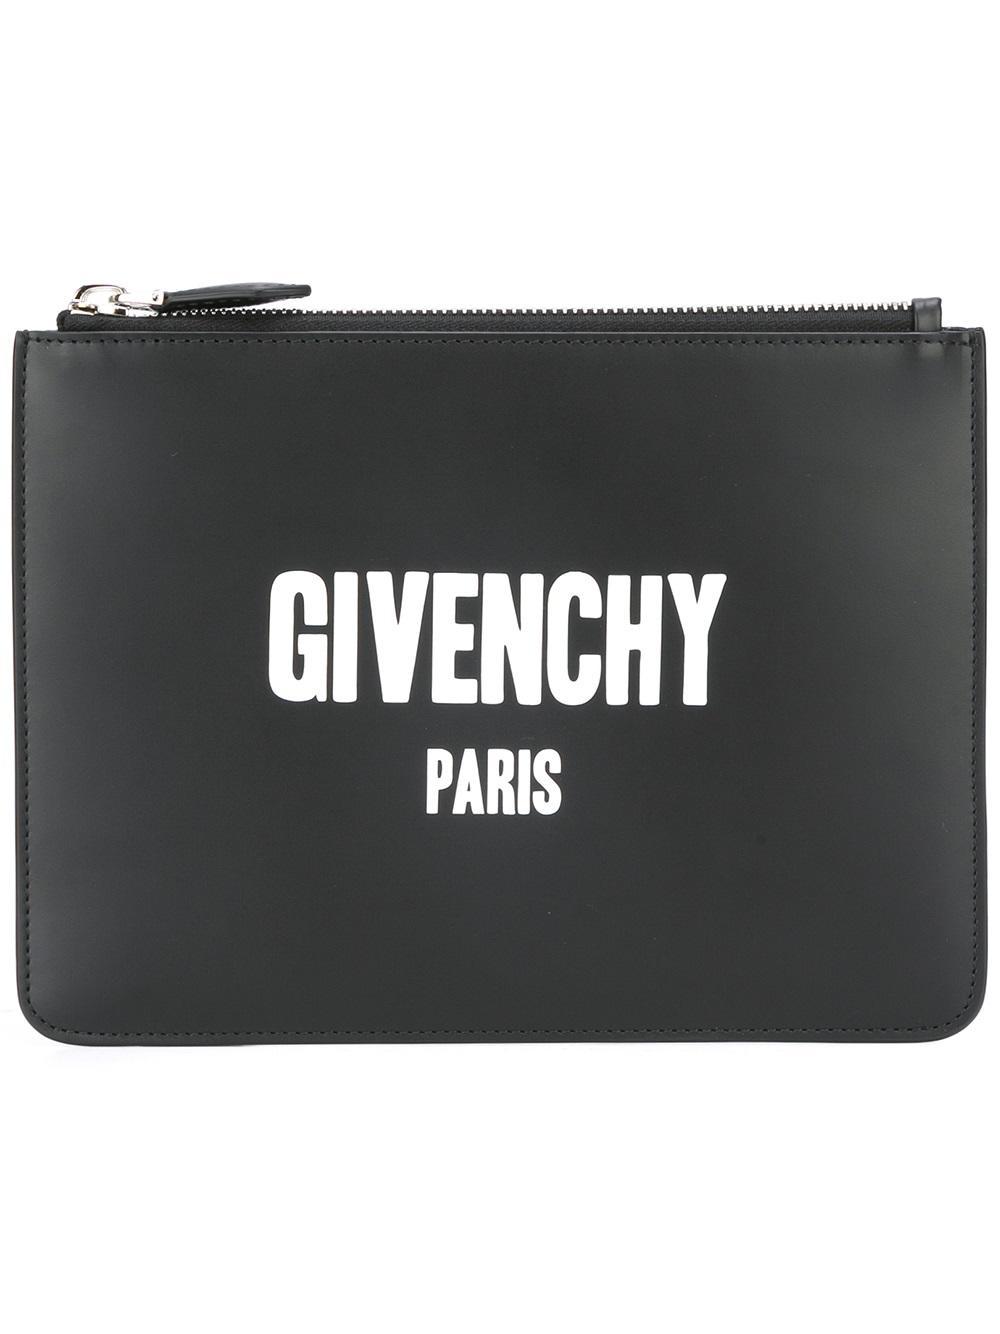 Givenchy Logos